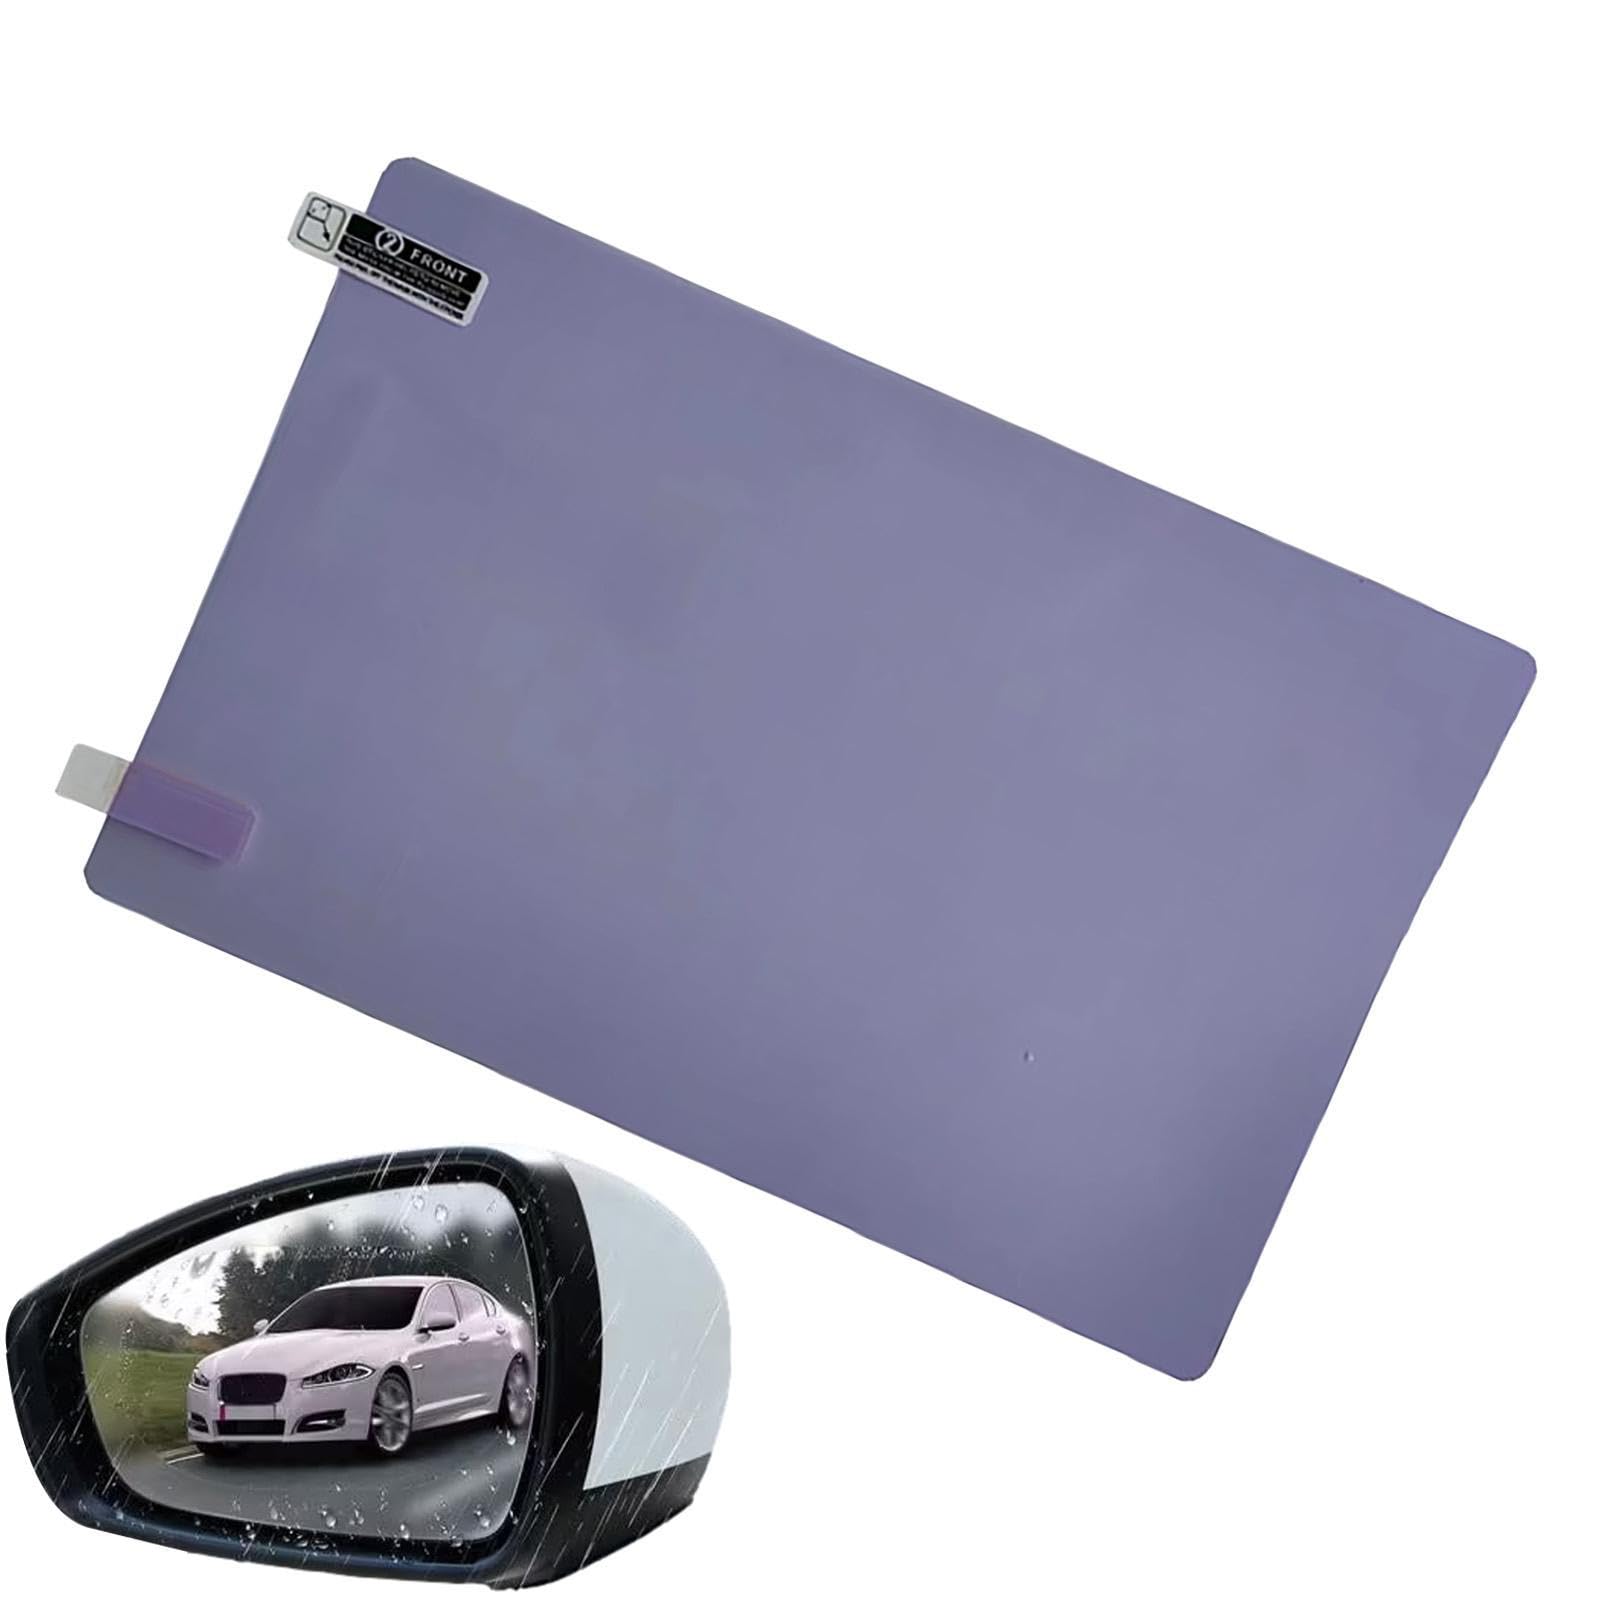 Auto-Rückspiegel-wasserdichte Folie - Selbstklebende, beschlagfreie, blendfreie Spiegelfolie für den Rückspiegel - Wasserfester, transparenter HD-Aufkleberfilm für sicheres Fahren von Hugsweet